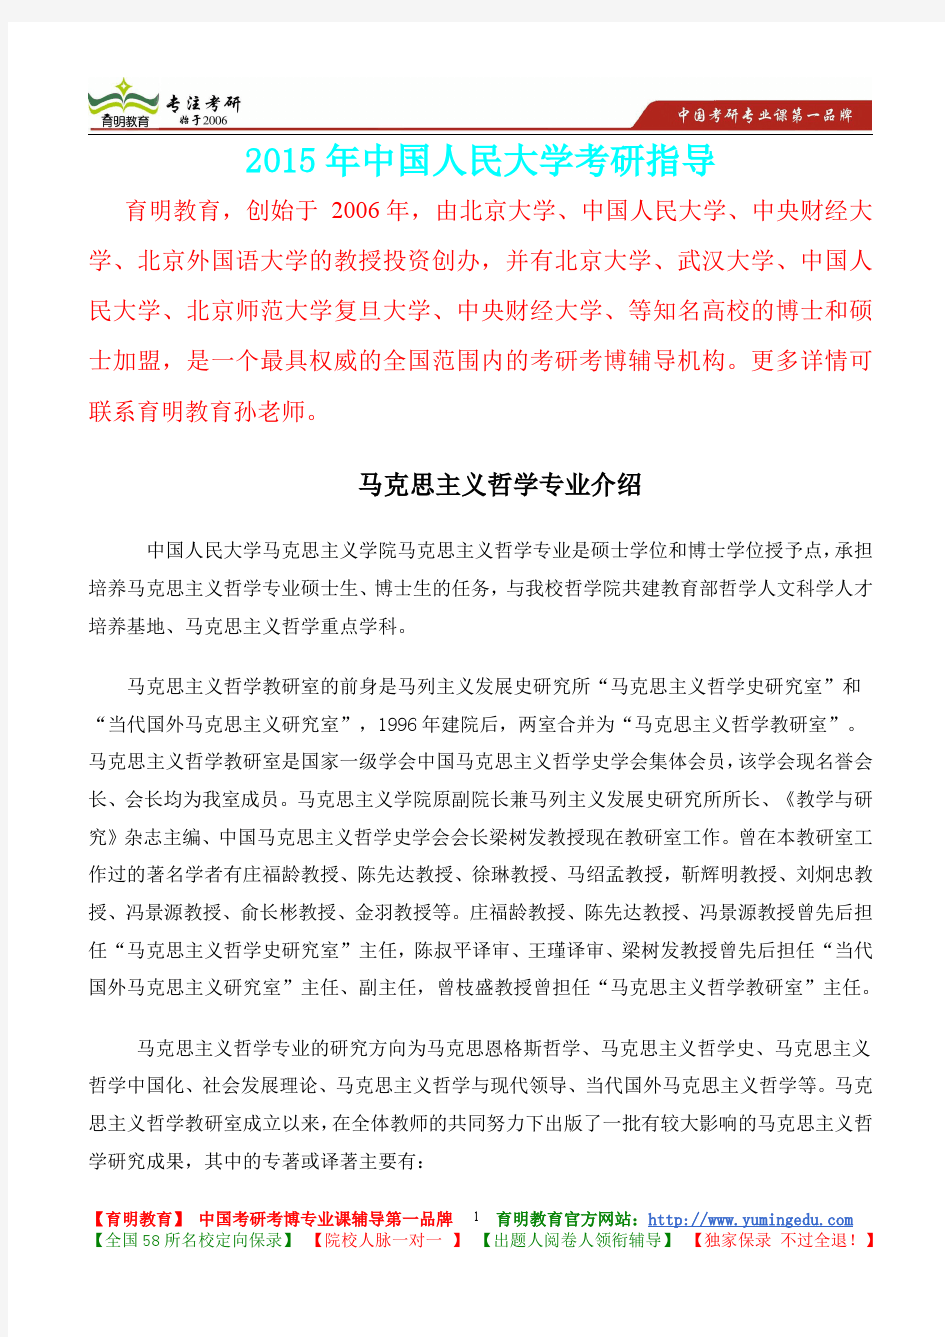 2015年中国人民大学马克思主义哲学考研笔记,复试真题,考研大纲,考研真题,考研经验